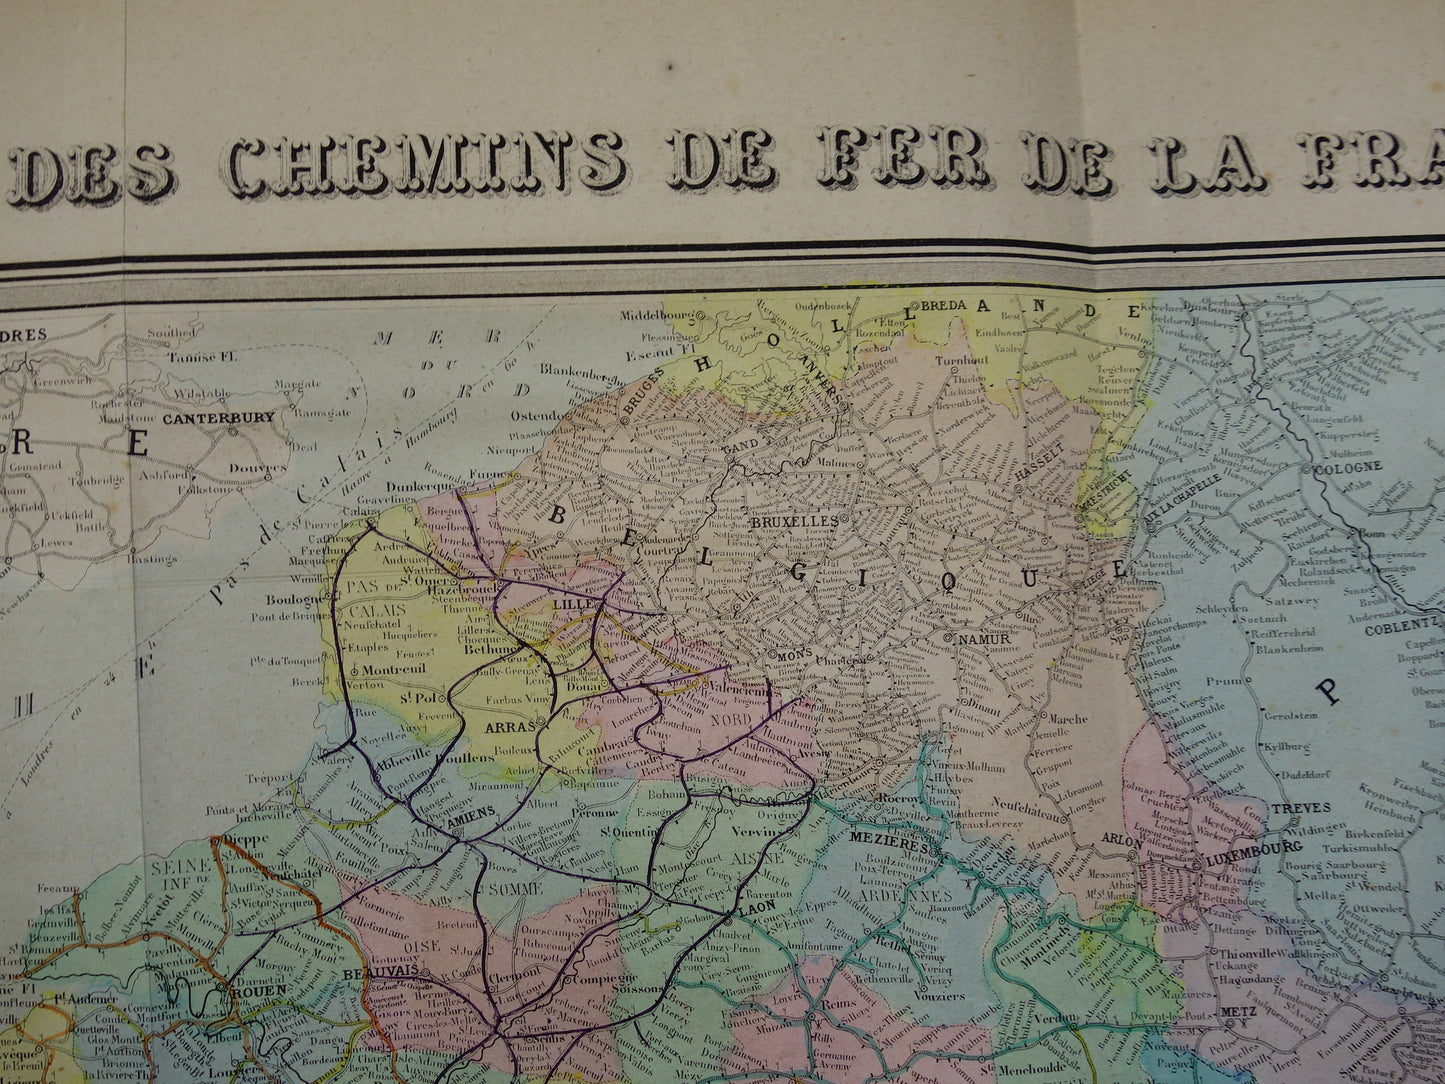 Grote oude kaart van Spoorwegen in Europa BESCHADIGD 1875 originele antieke oude landkaart spoorlijnen centraal Europa spoorkaart